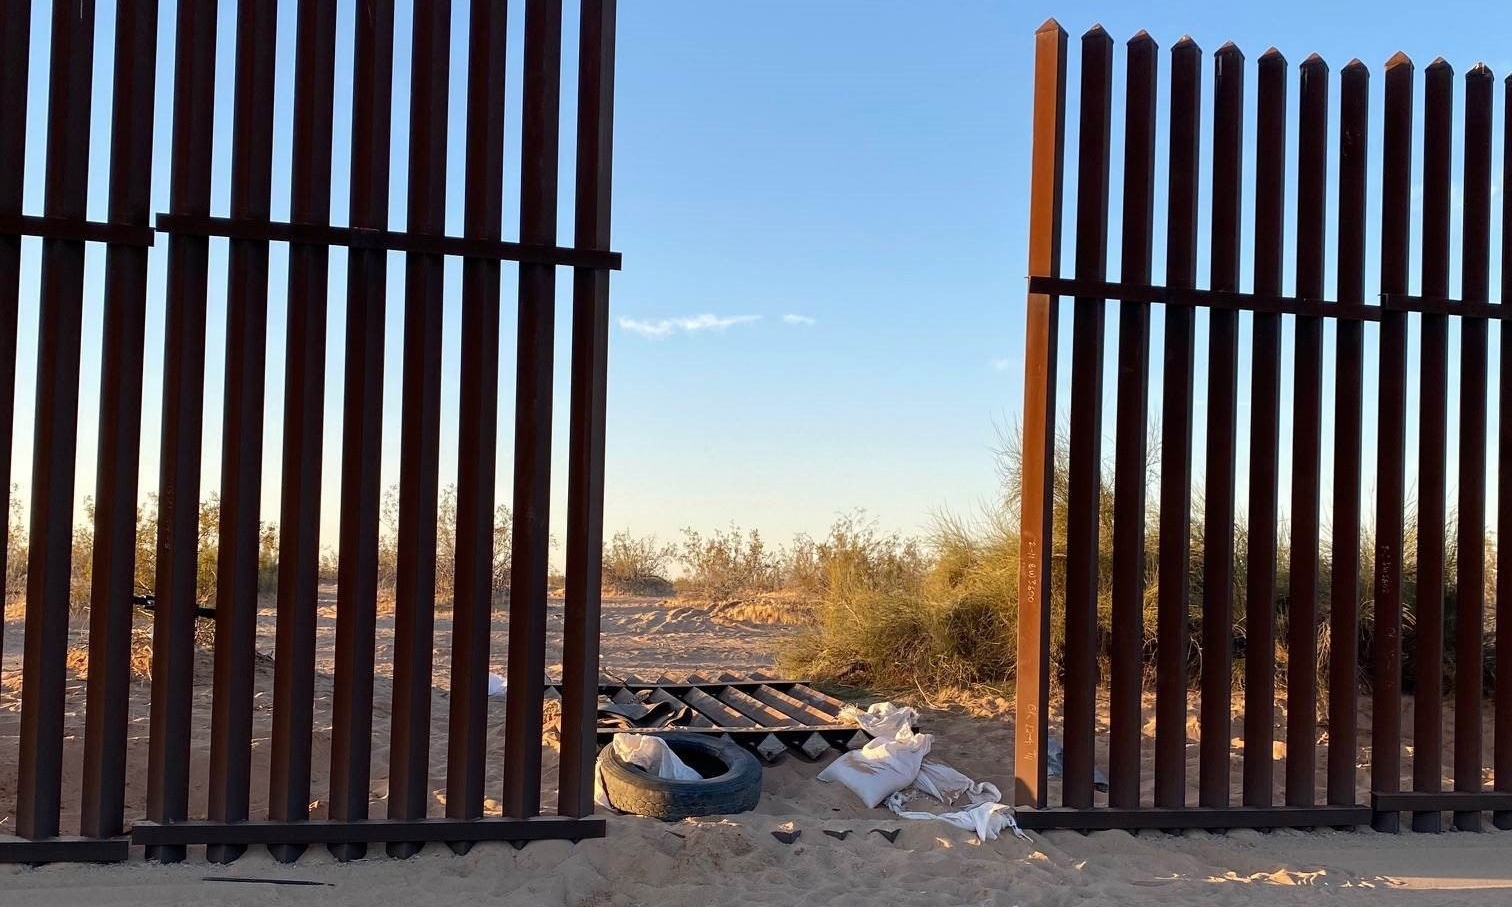 La camioneta, en la que viajaban 25 personas y se estrelló el martes contra un camión en California, ingresó al país por un agujero en la valla fronteriza. (Foto Prensa Libre: EFE)